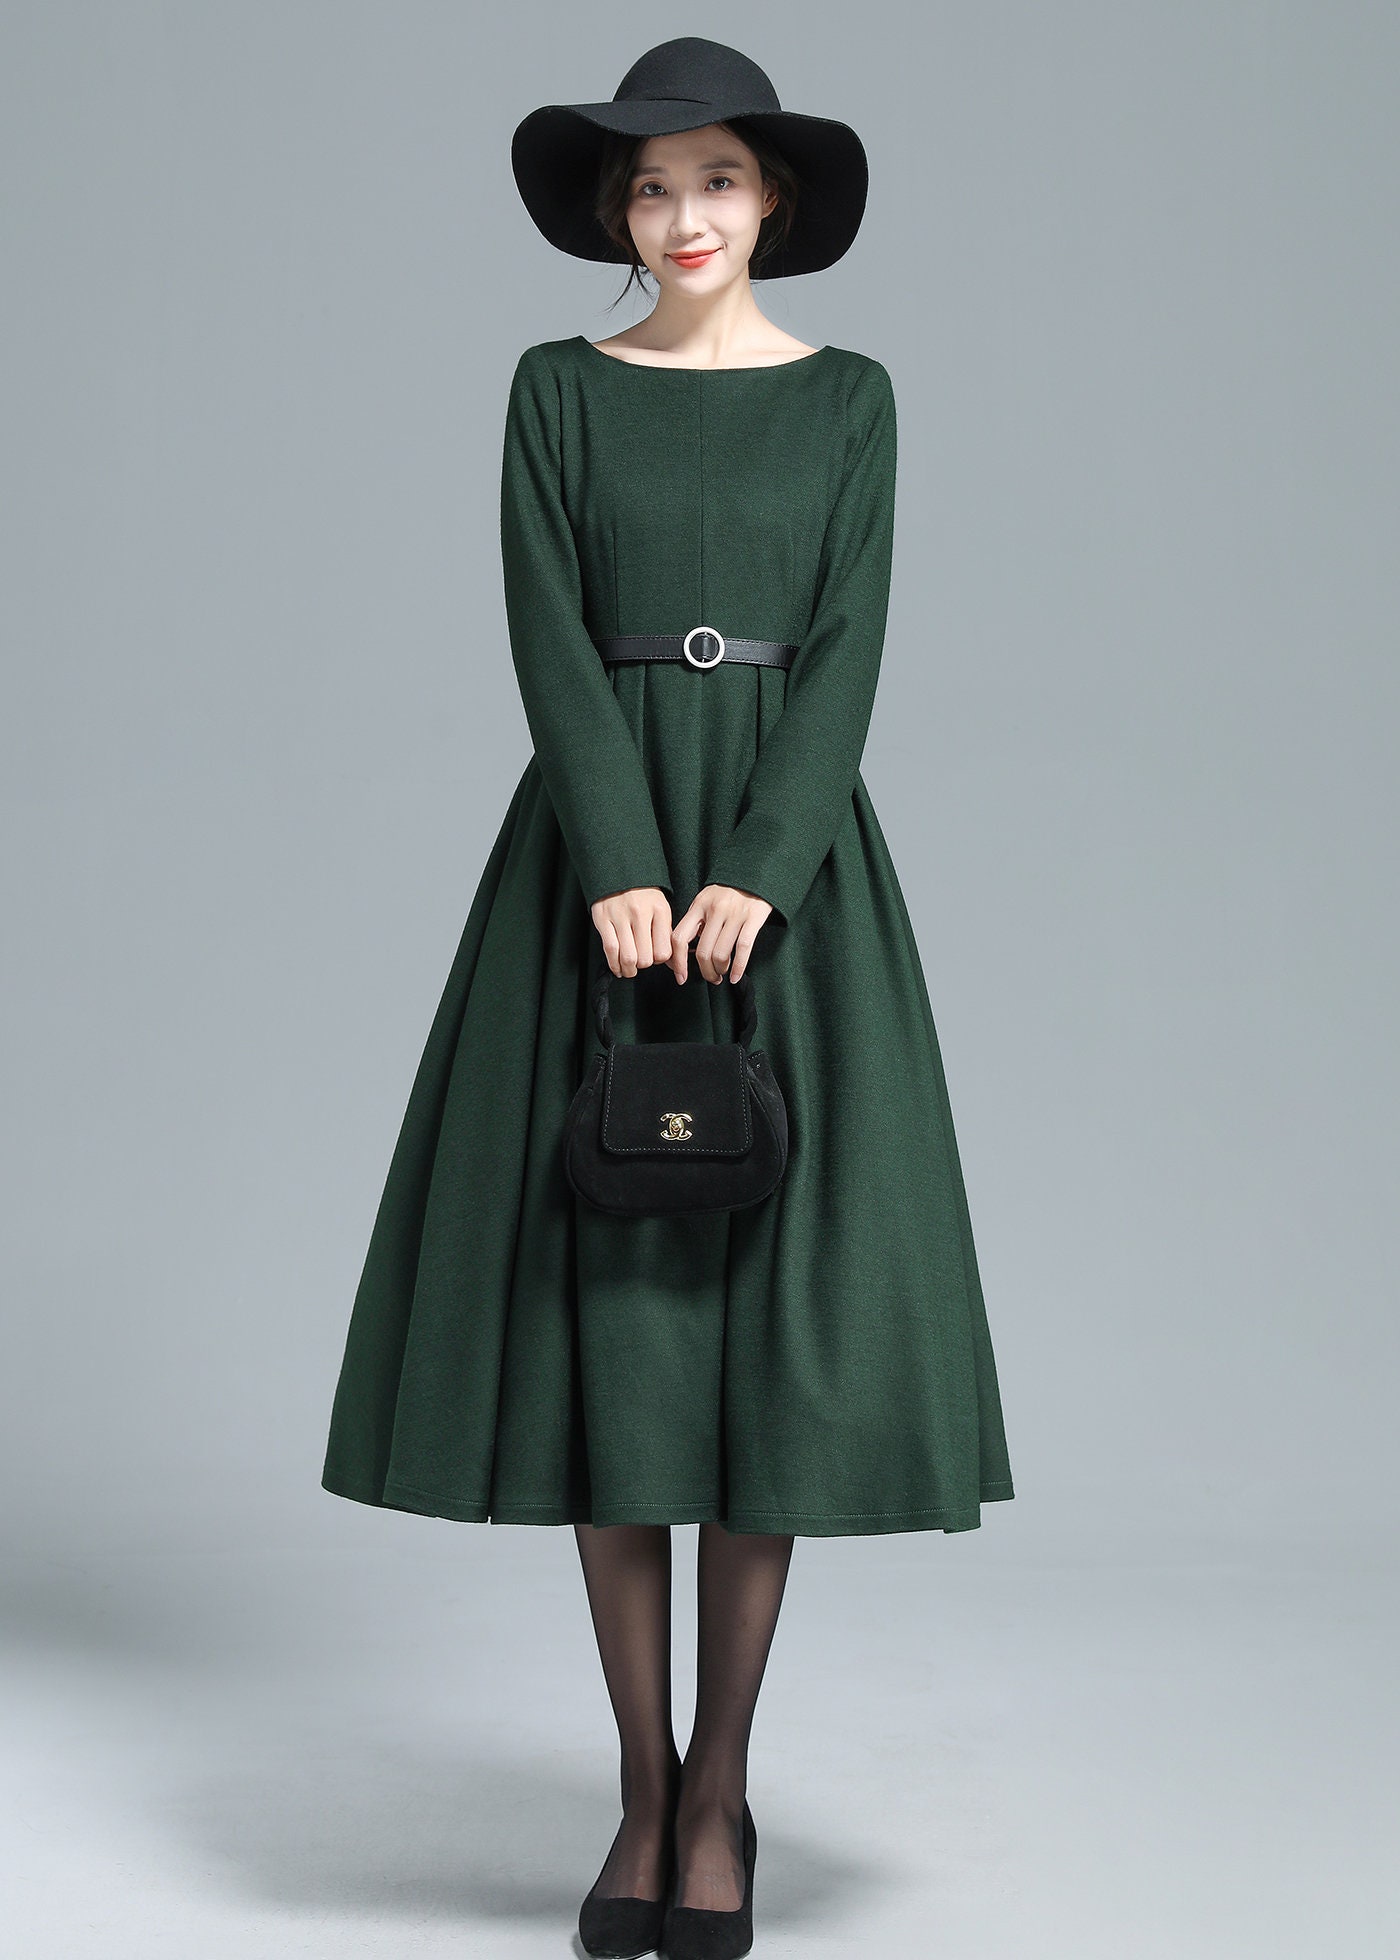 Green Winter Wool Dress Women, Wool Midi Dress, Long Sleeve Dress